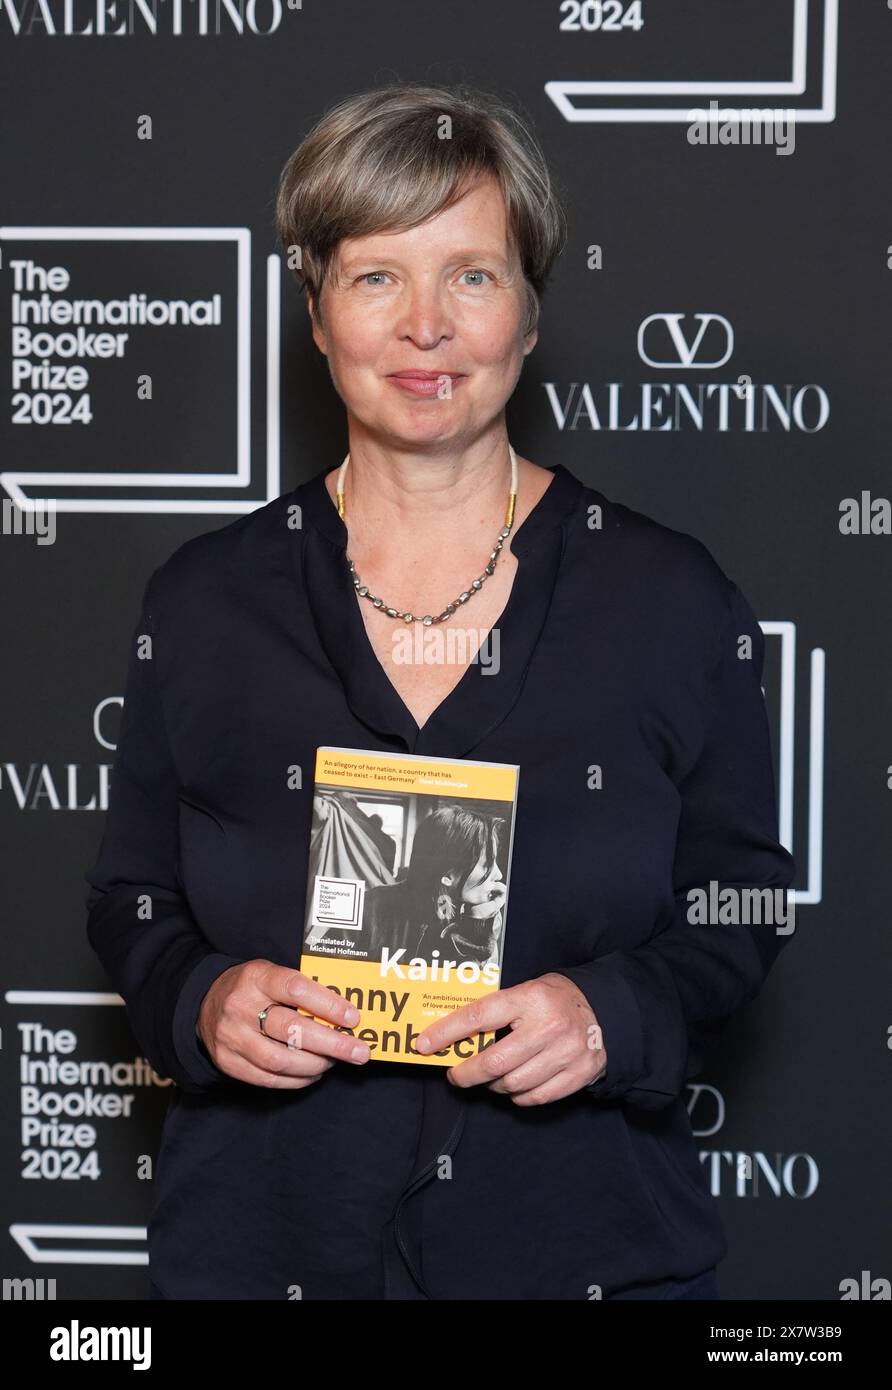 Jenny Erpenbeck nimmt an der Bekanntgabe des Preisträgers des International Booker Prize 2024 in der Tate Modern in London Teil. Bilddatum: Dienstag, 21. Mai 2024. Stockfoto